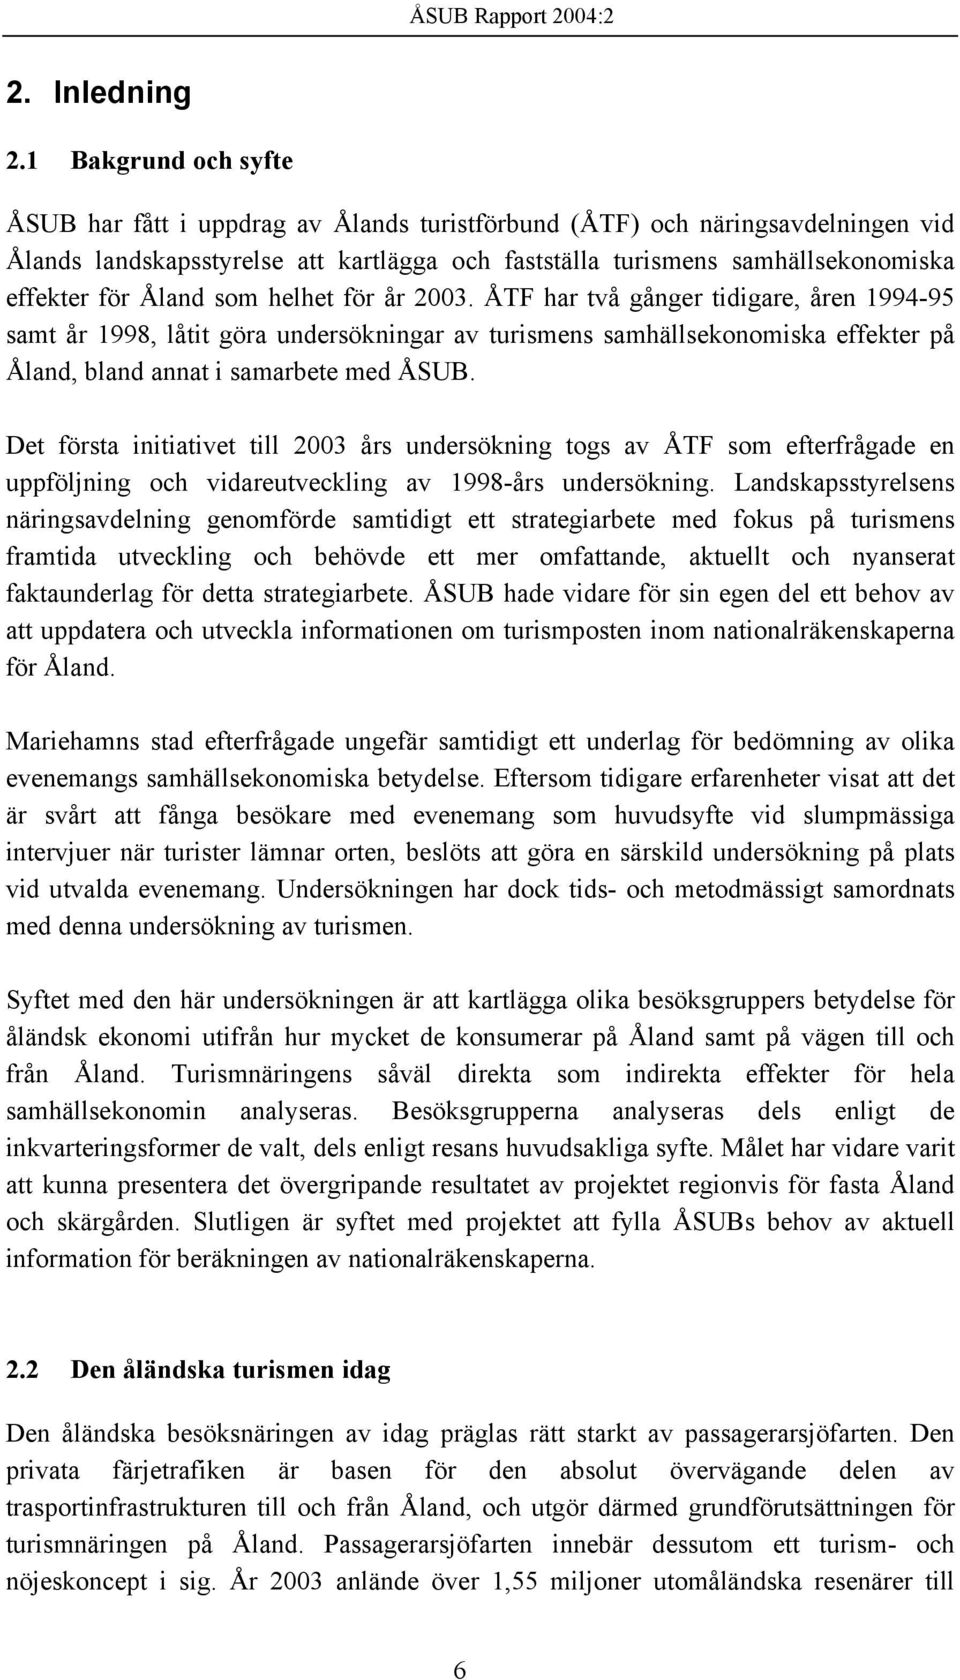 Åland som helhet för år 2003. ÅTF har två gånger tidigare, åren 1994-95 samt år 1998, låtit göra undersökningar av turismens samhällsekonomiska effekter på Åland, bland annat i samarbete med ÅSUB.